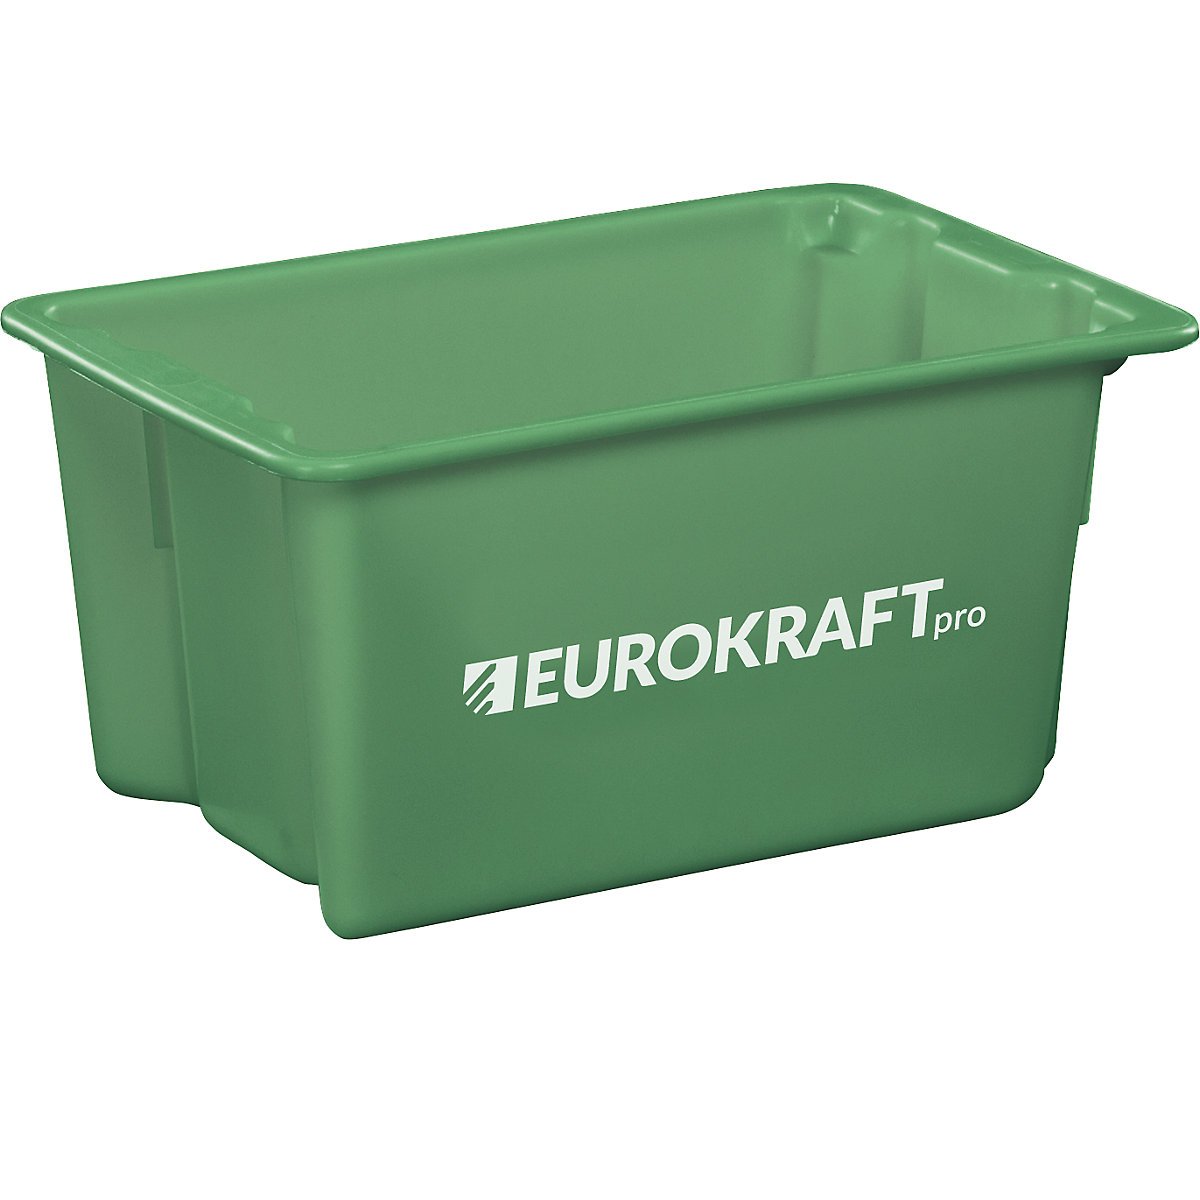 EUROKRAFTpro – Otočná stohovacia nádoba z polypropylénu vhodného pre potraviny, objem 50 litrov, OJ 3 ks, steny a dno uzatvorené, zelená